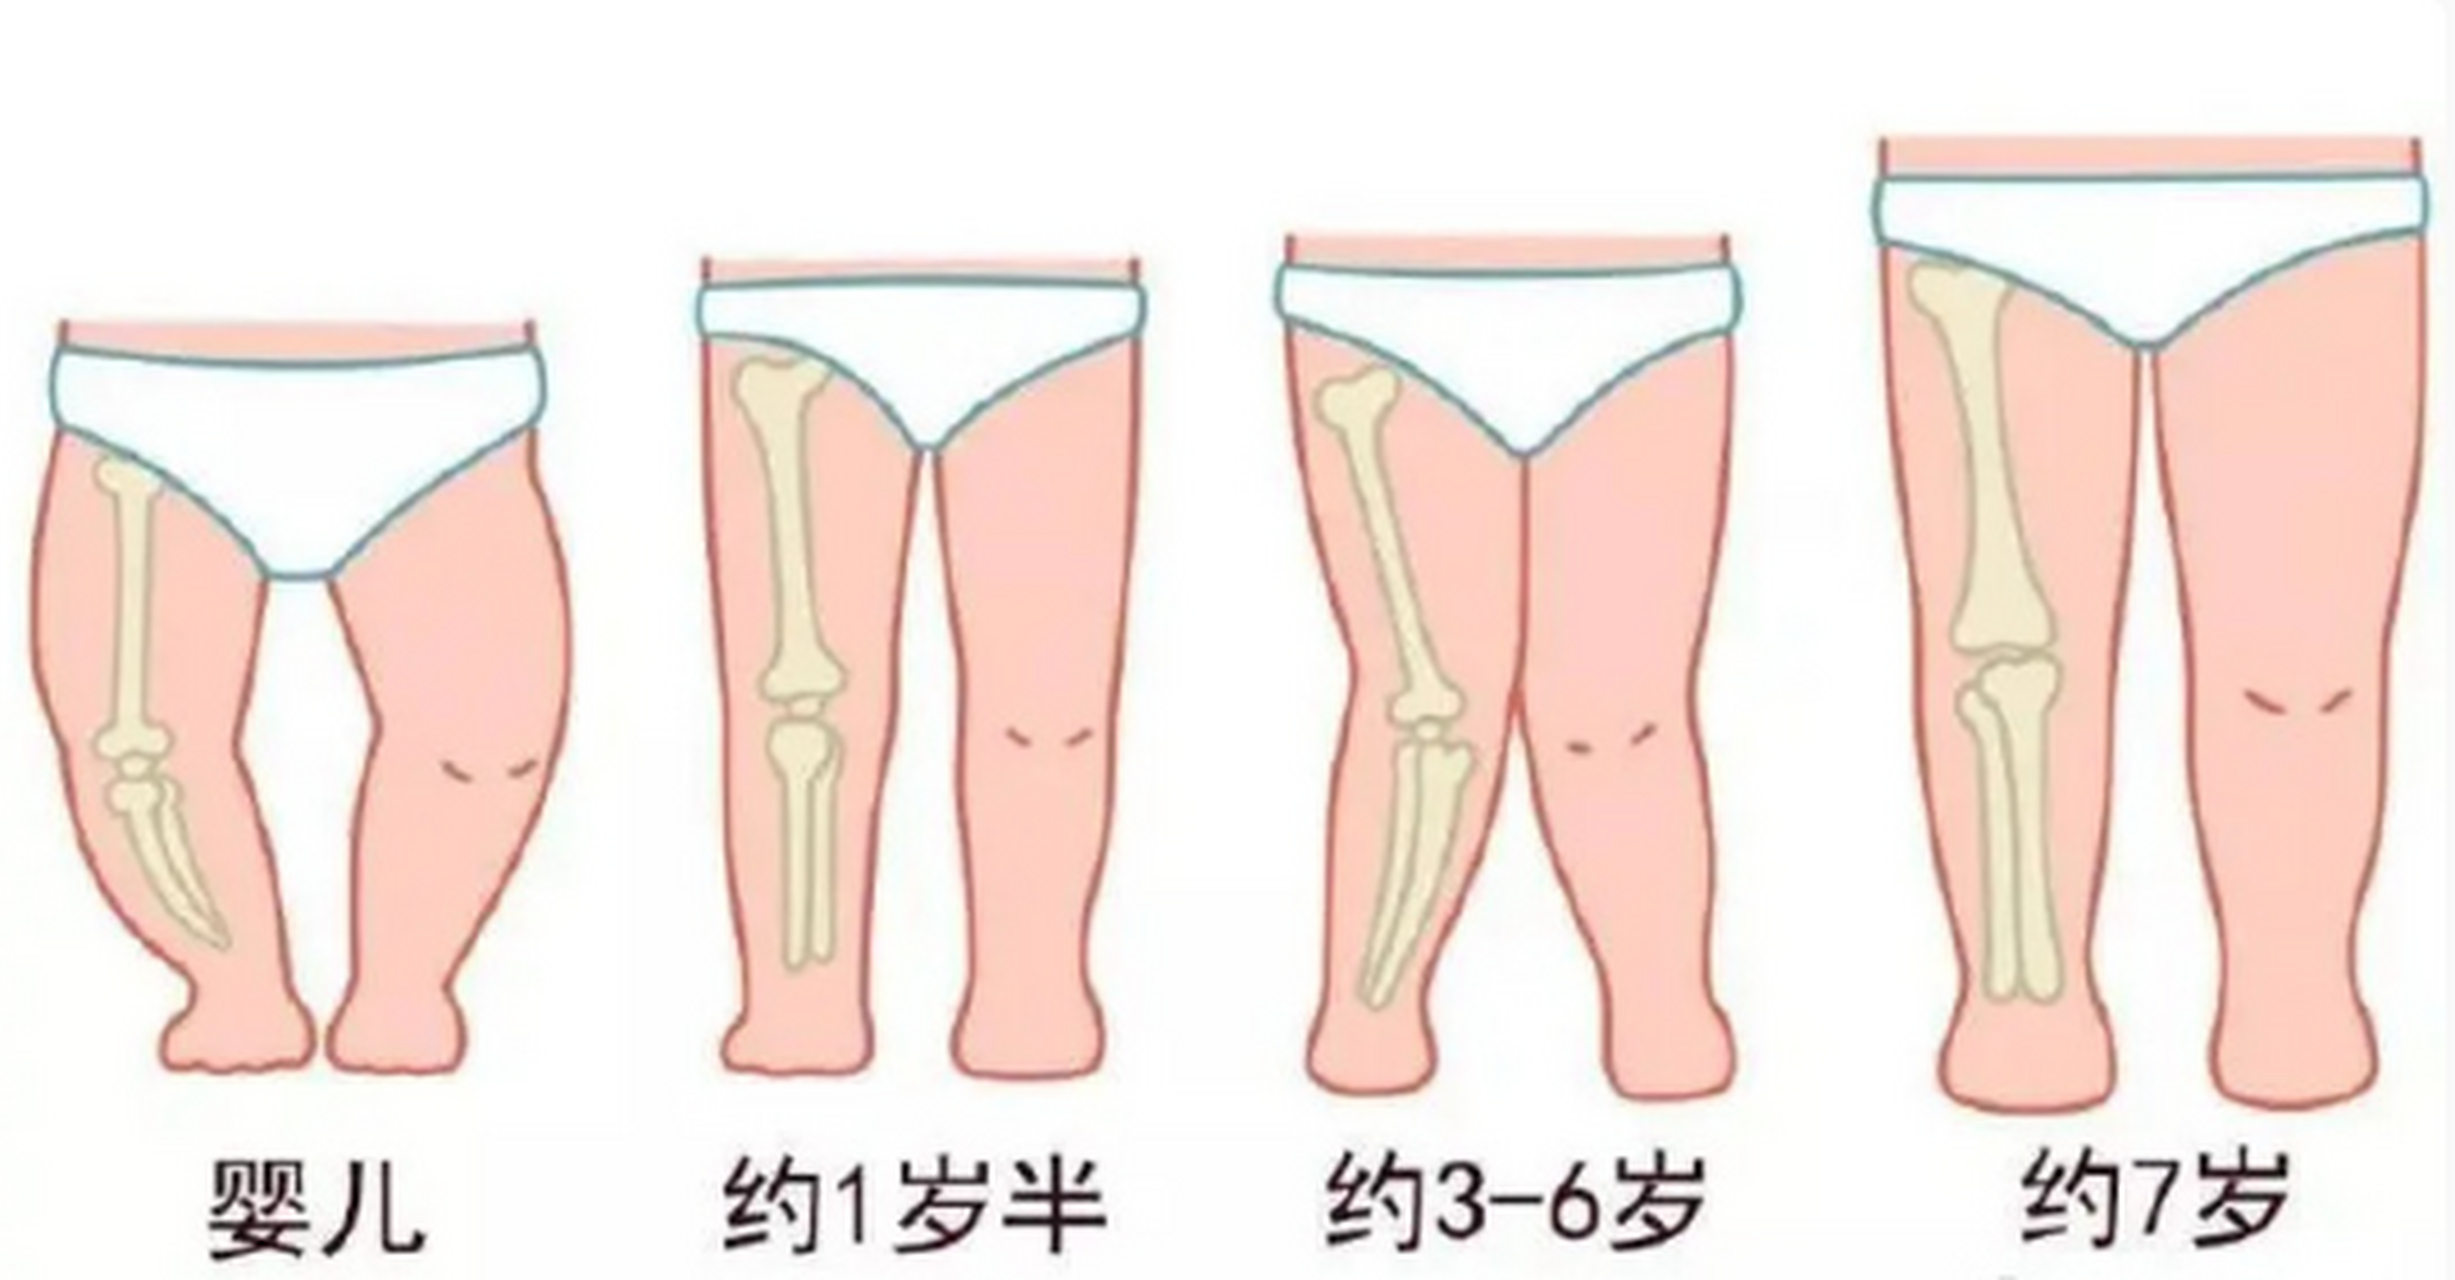 很多宝宝的腿在2岁以前看上去都有一点弯曲,有些宝宝的腿会在他10岁的